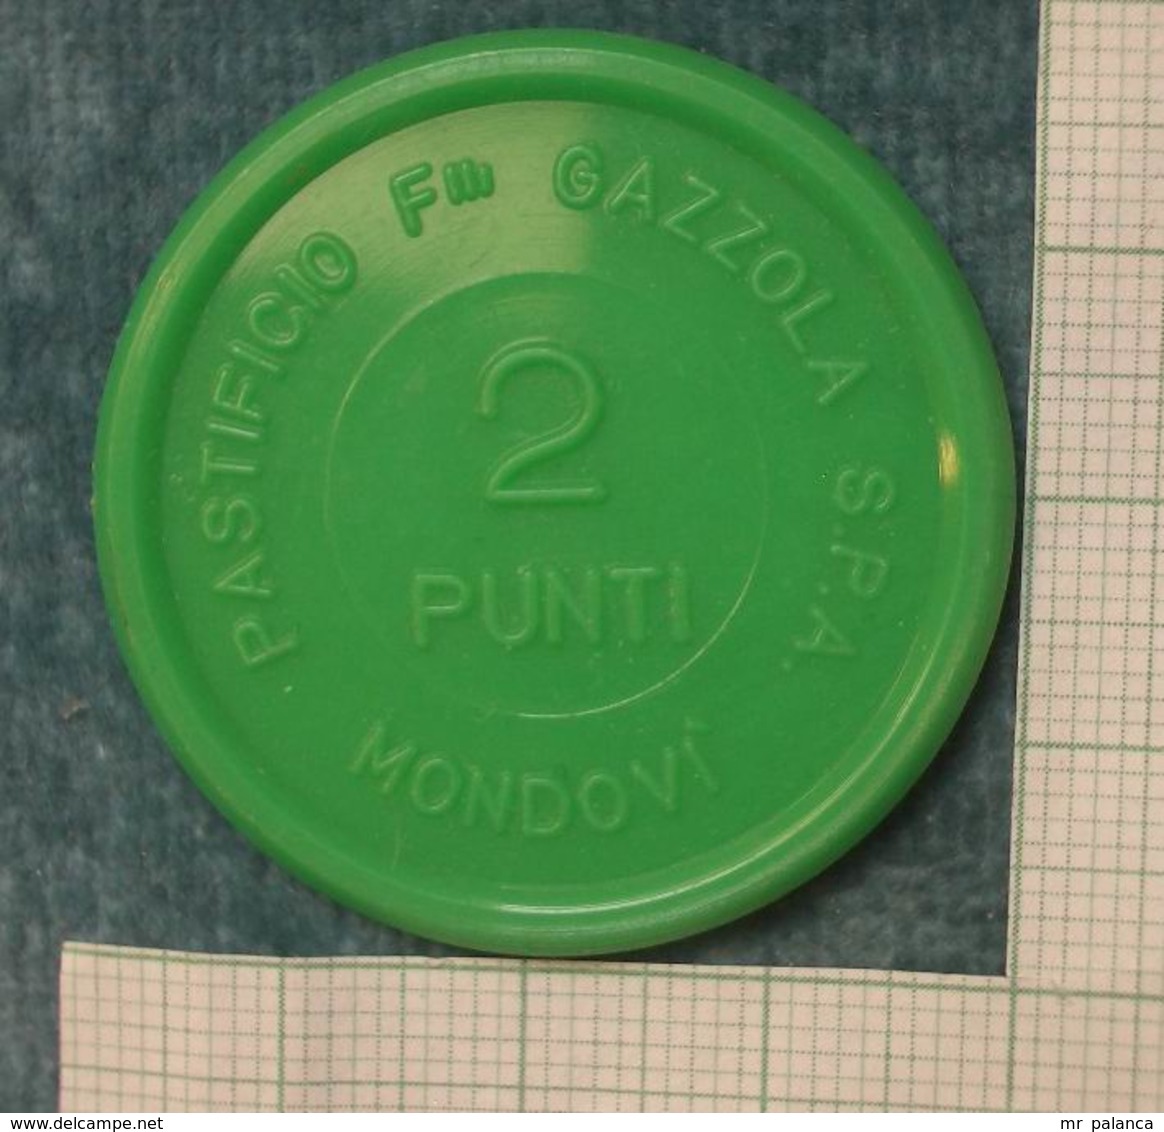 M_p> Gettone " PASTIFICIO F.LLI GAZZOLA S.P.A. MONDOVI' ( CN )  2 PUNTI " In Plastica Verde - Noodgeld